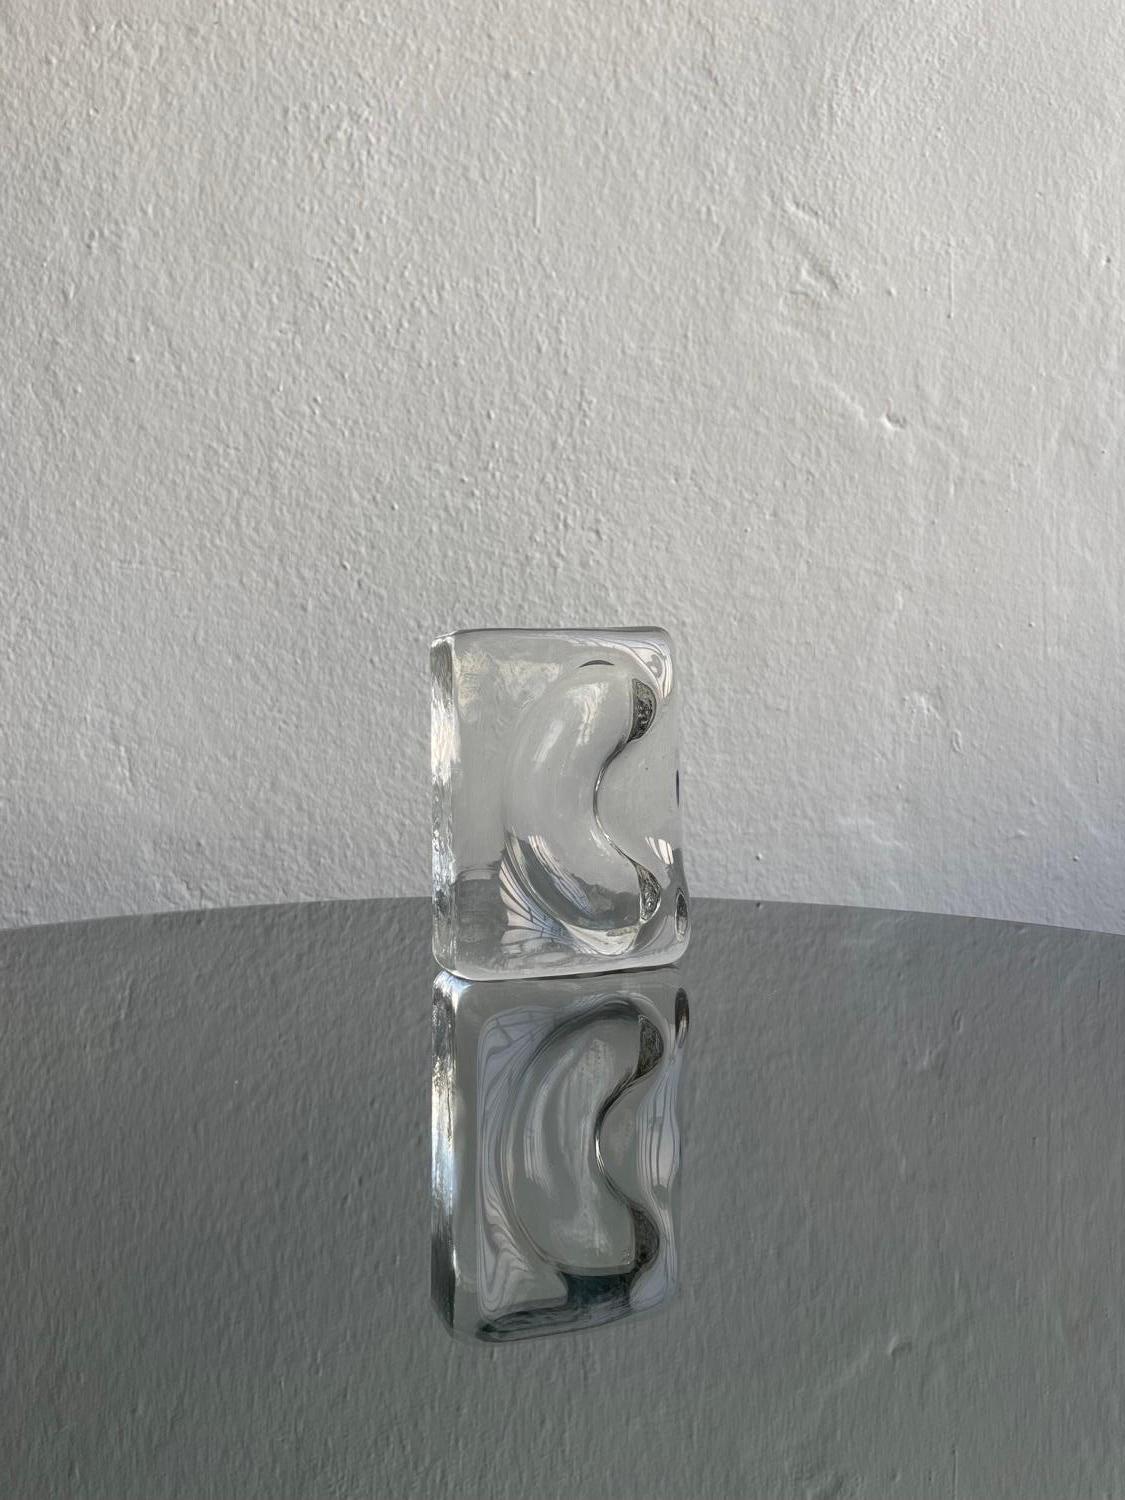 Plateau en verre décoratif - plateau en verre de Murano - sculpture en verre de collection

Plateau décoratif Vintage en verre Murano épais et lourd, réalisé en verre clair et estampillé de forme rectangulaire avec une rainure incurvée en forme de